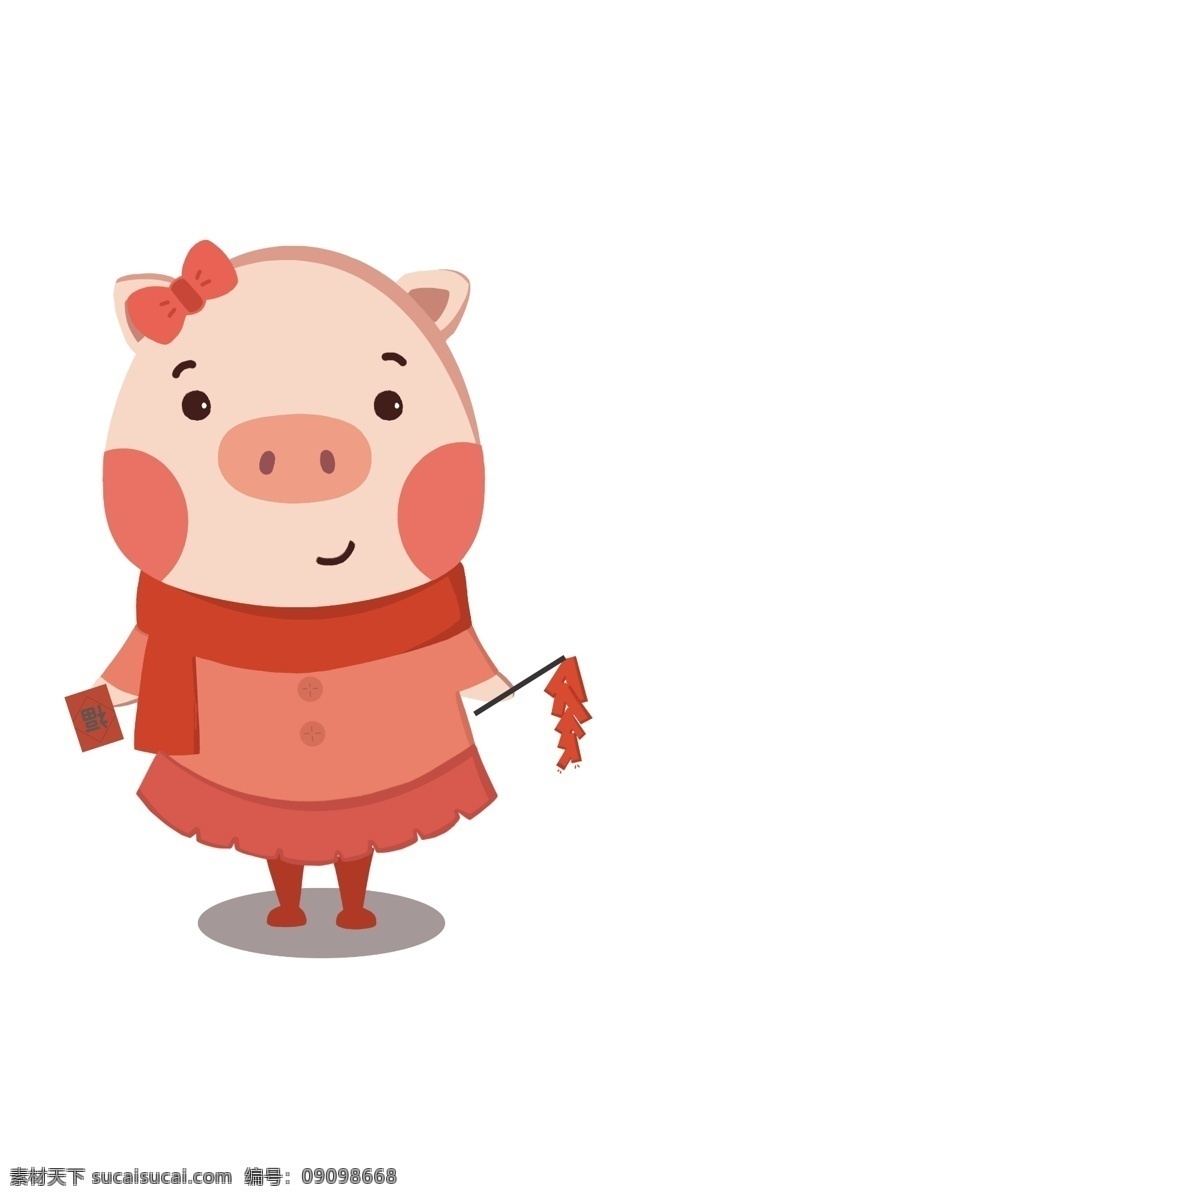 卡通 手绘 猪年 可爱 呆 萌 过年 红色 小 猪 可爱小猪 小猪 卡通小猪 手绘小猪 呆萌小猪 猪妹妹